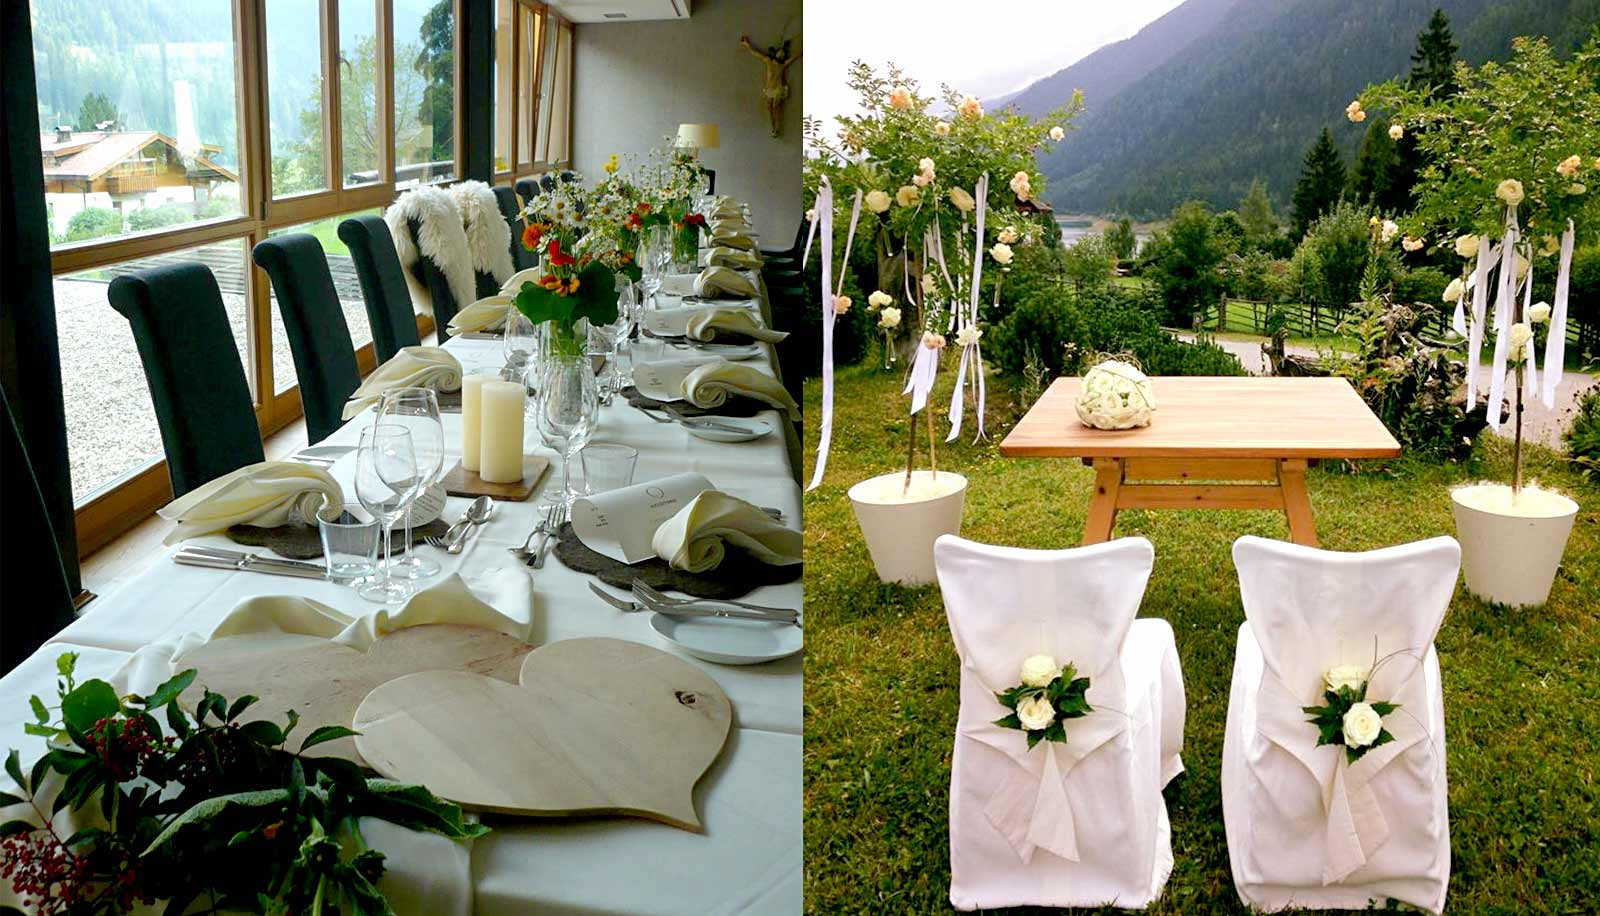 Location Für Hochzeit
 Arosea ideale Location für eine Hochzeit in Südtirol